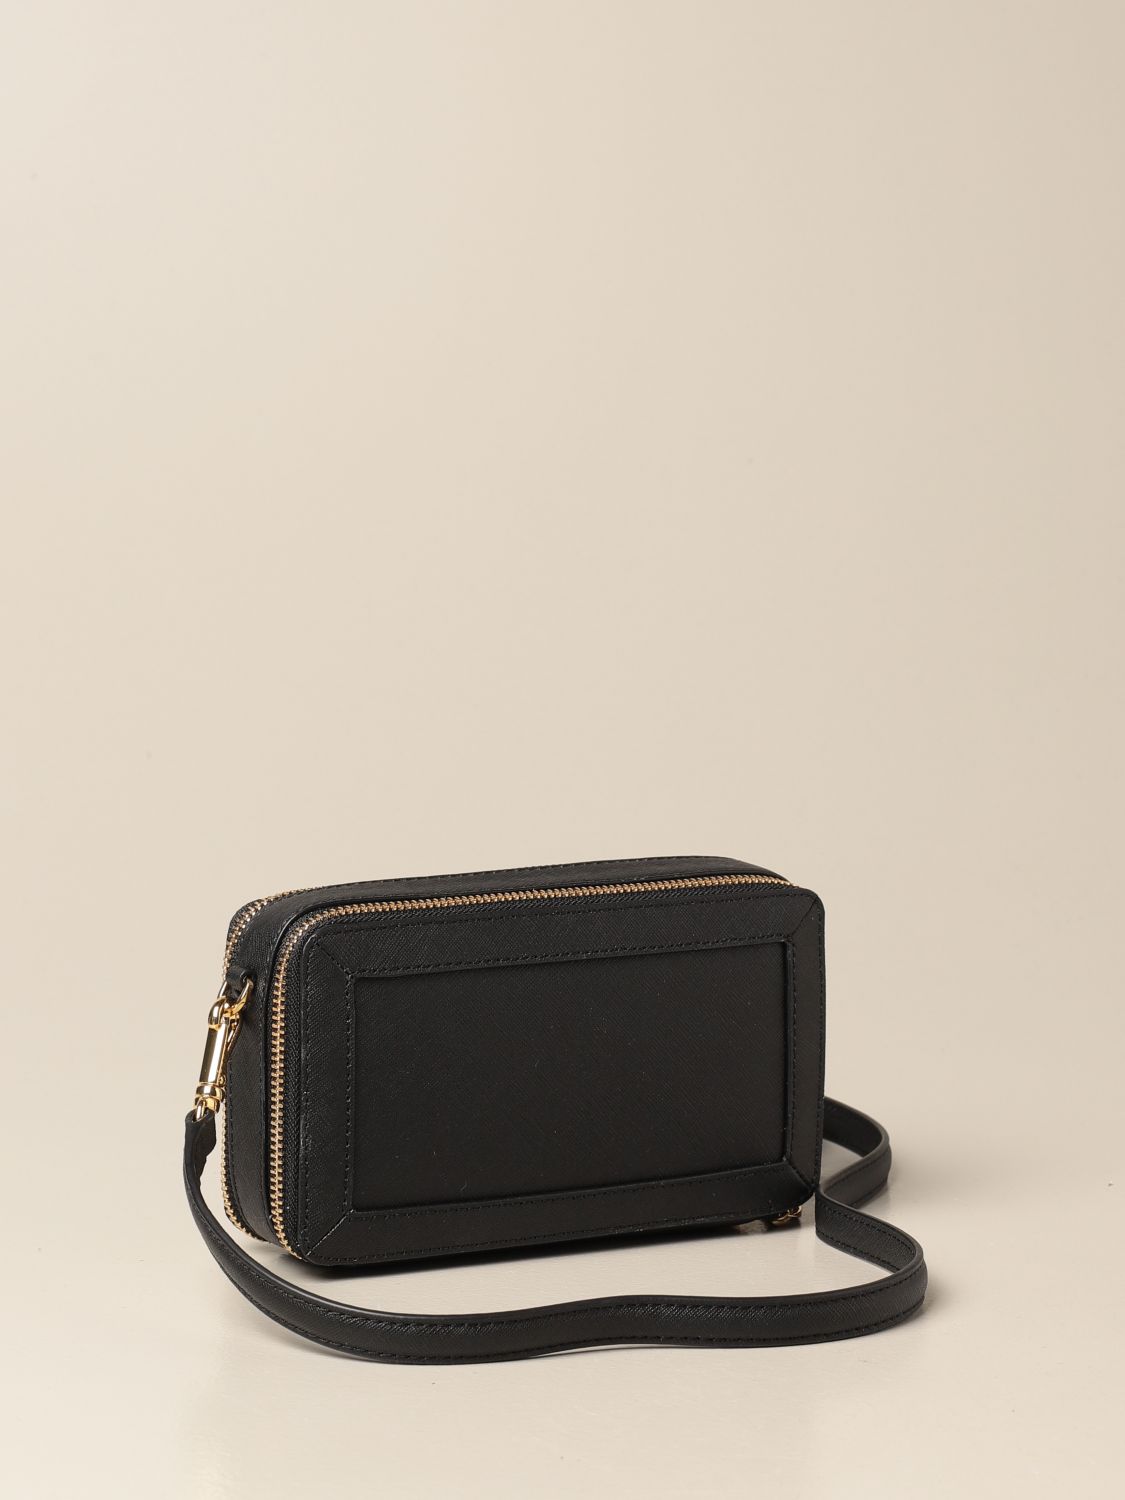 Lauren Ralph Lauren Black Leather Small Crossbody Bag - Total